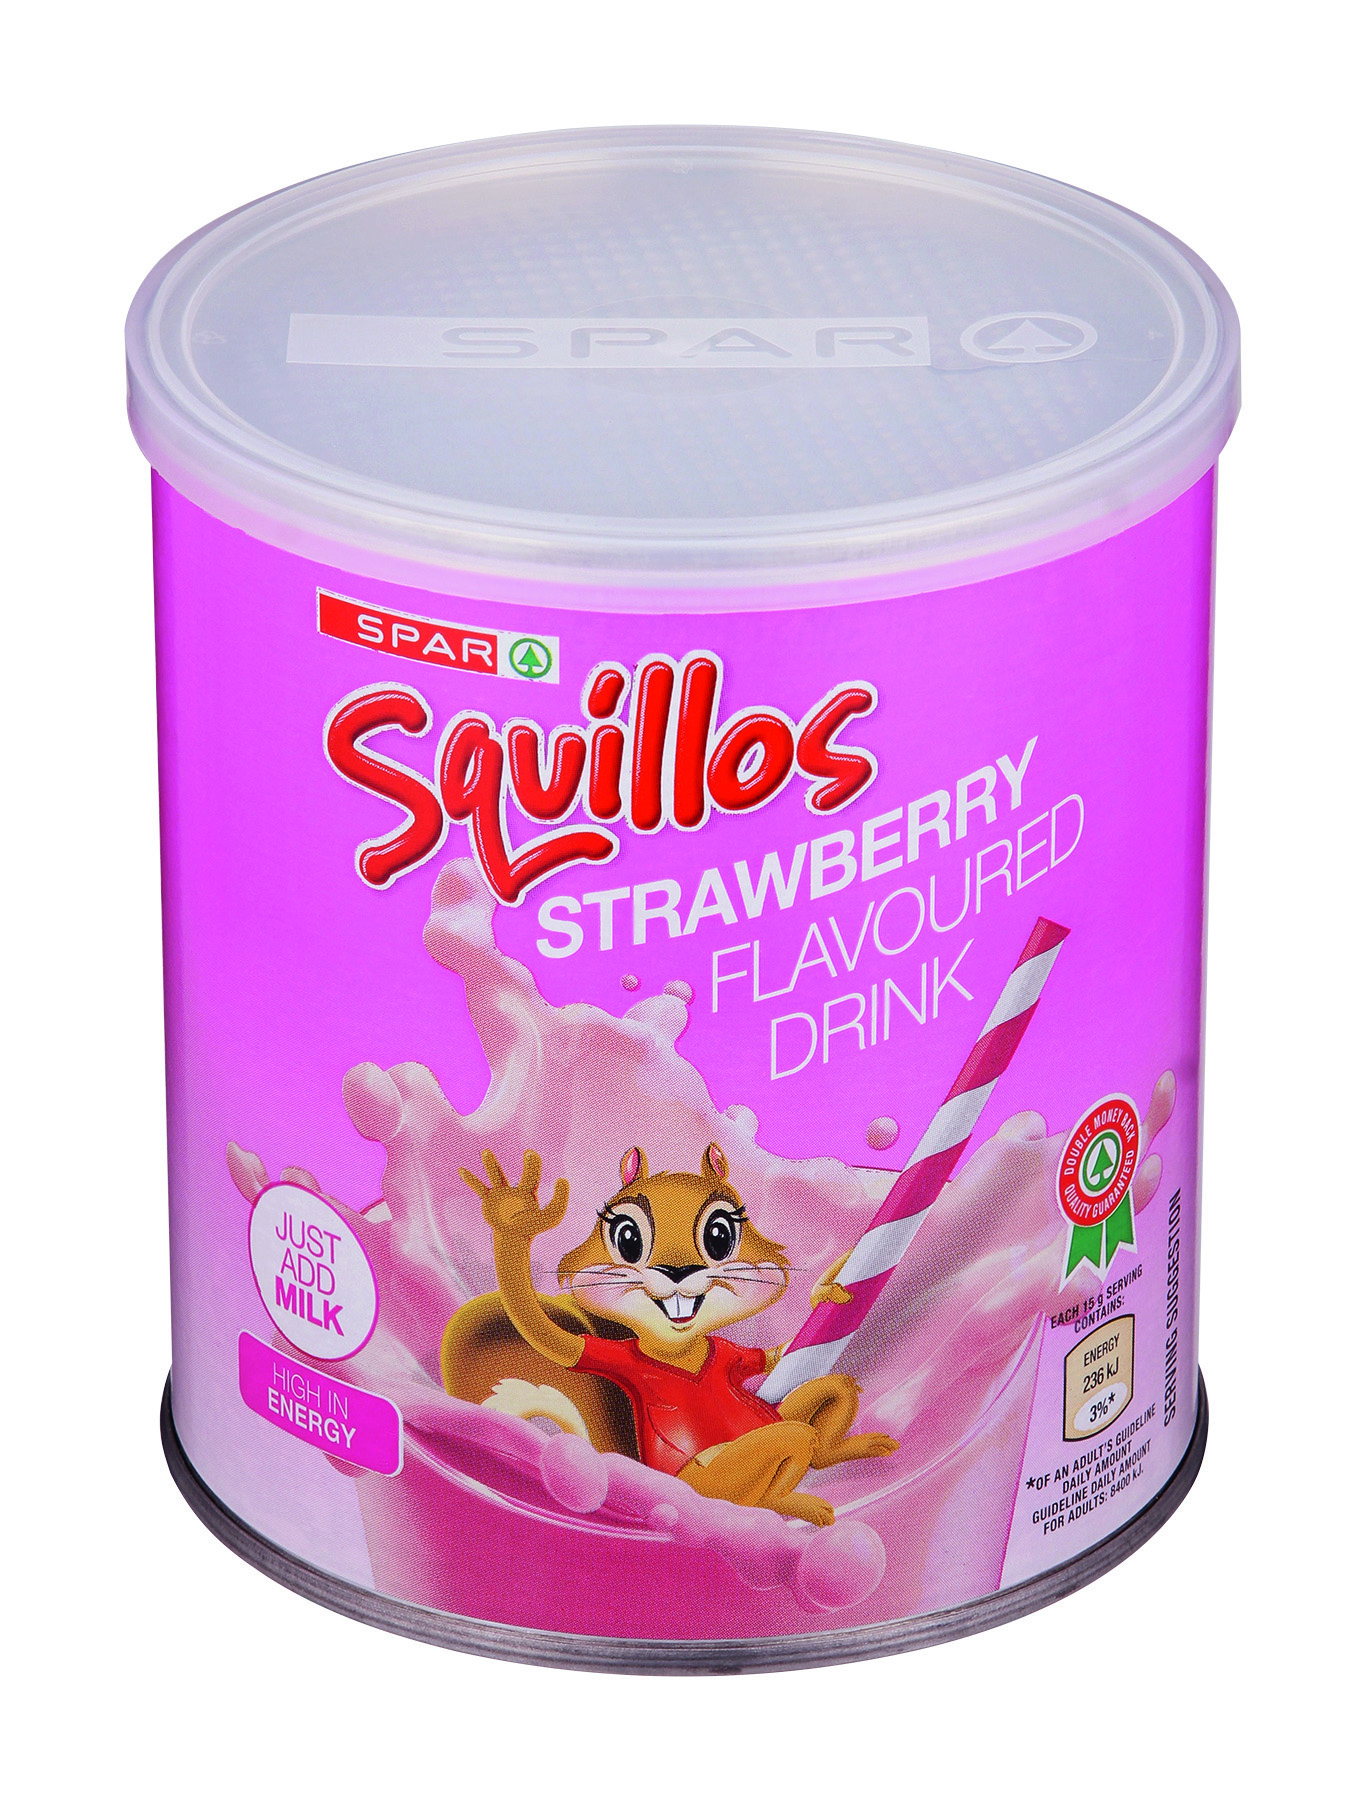 squillos milk modifier strawberry